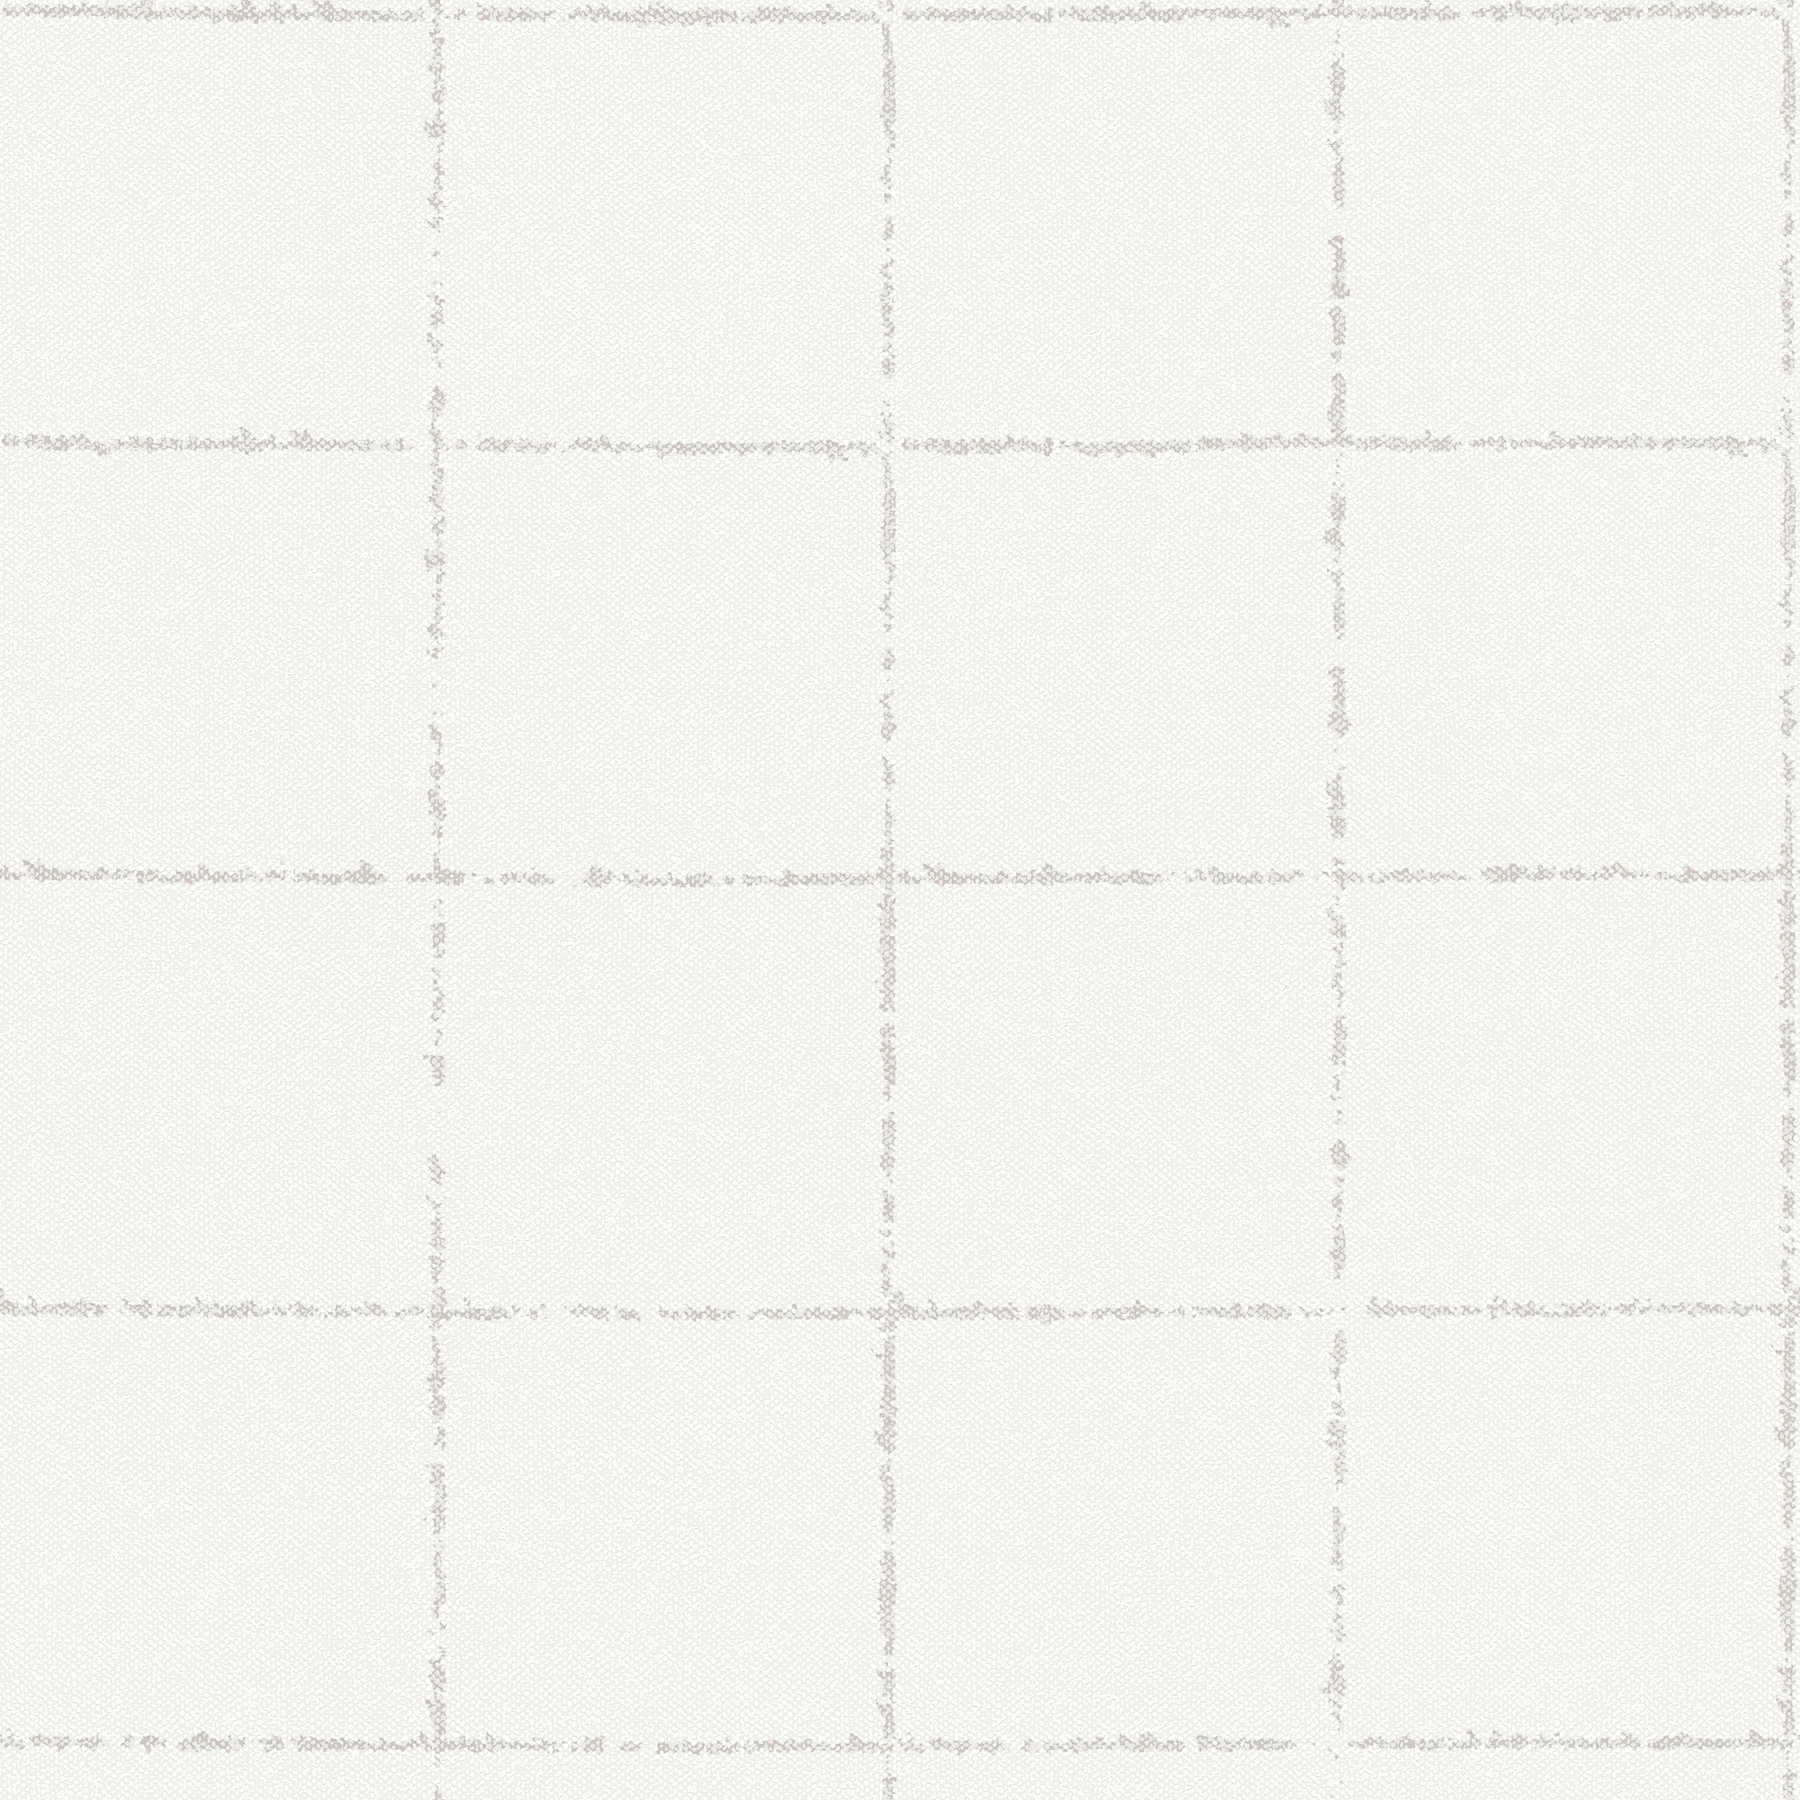         Textile optic checkered wallpaper, textured - cream, grey, white
    